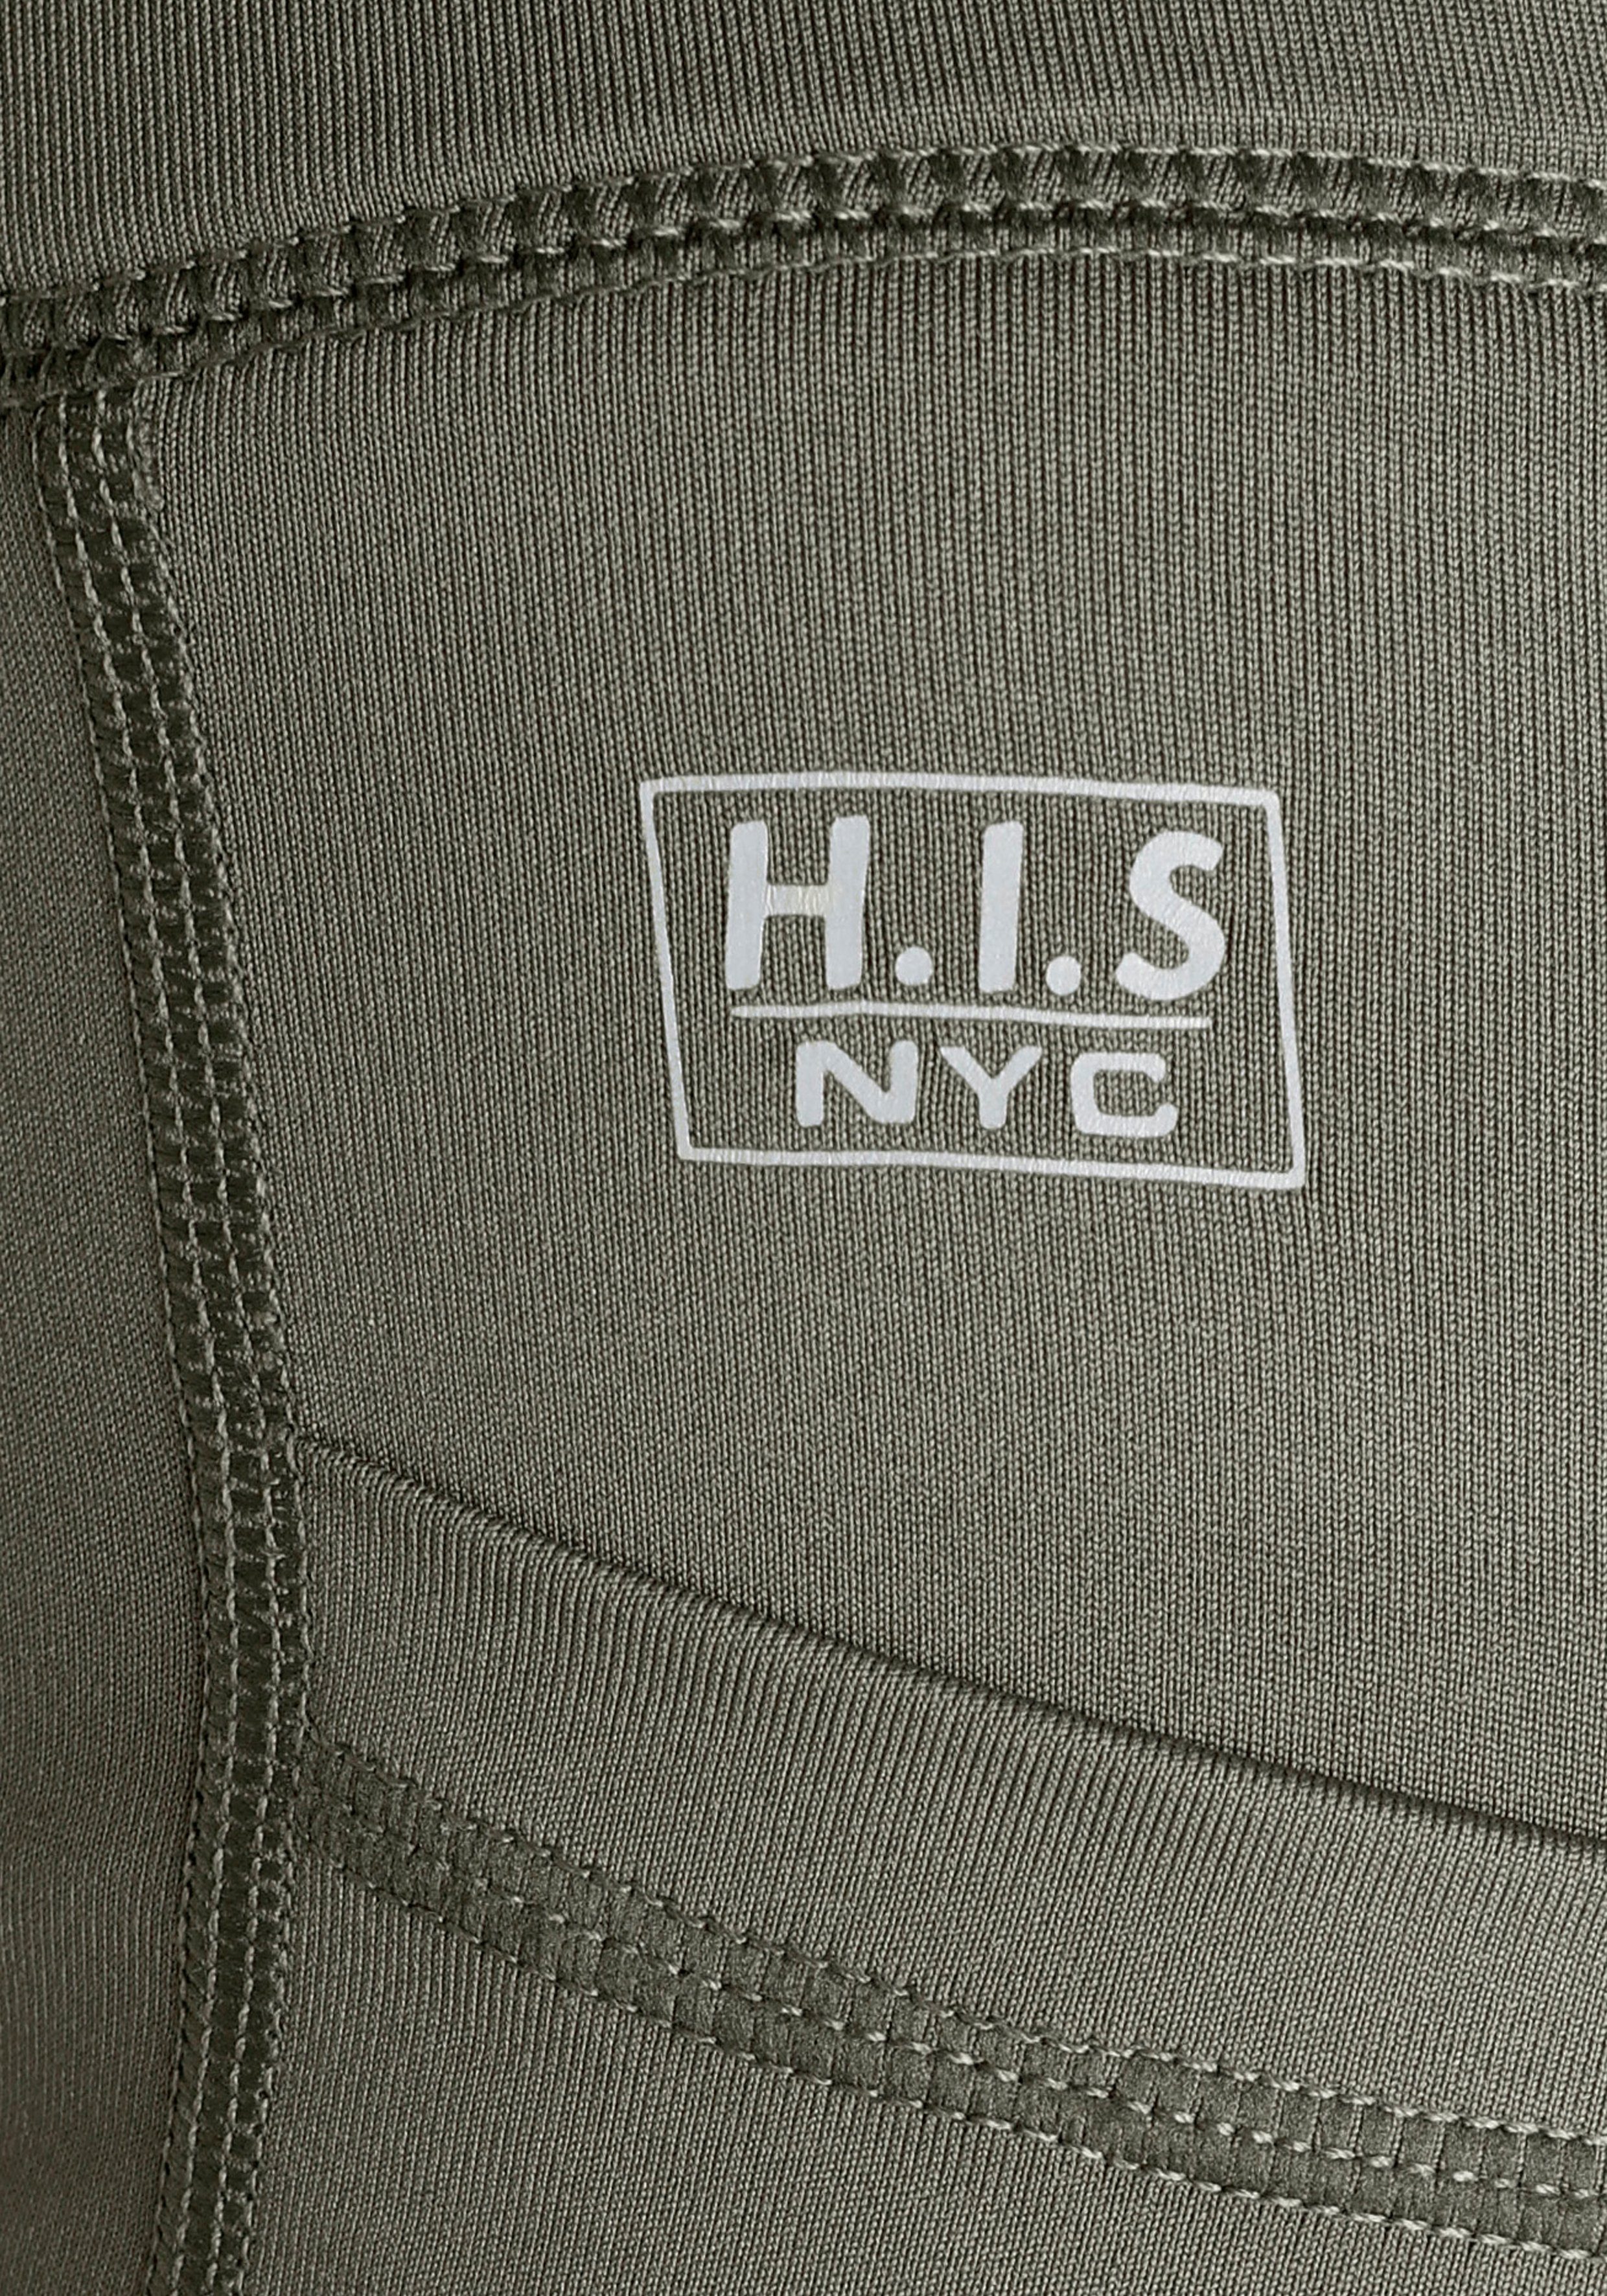 H.I.S Funktionshose khaki seitlichen mit Handy-Taschen